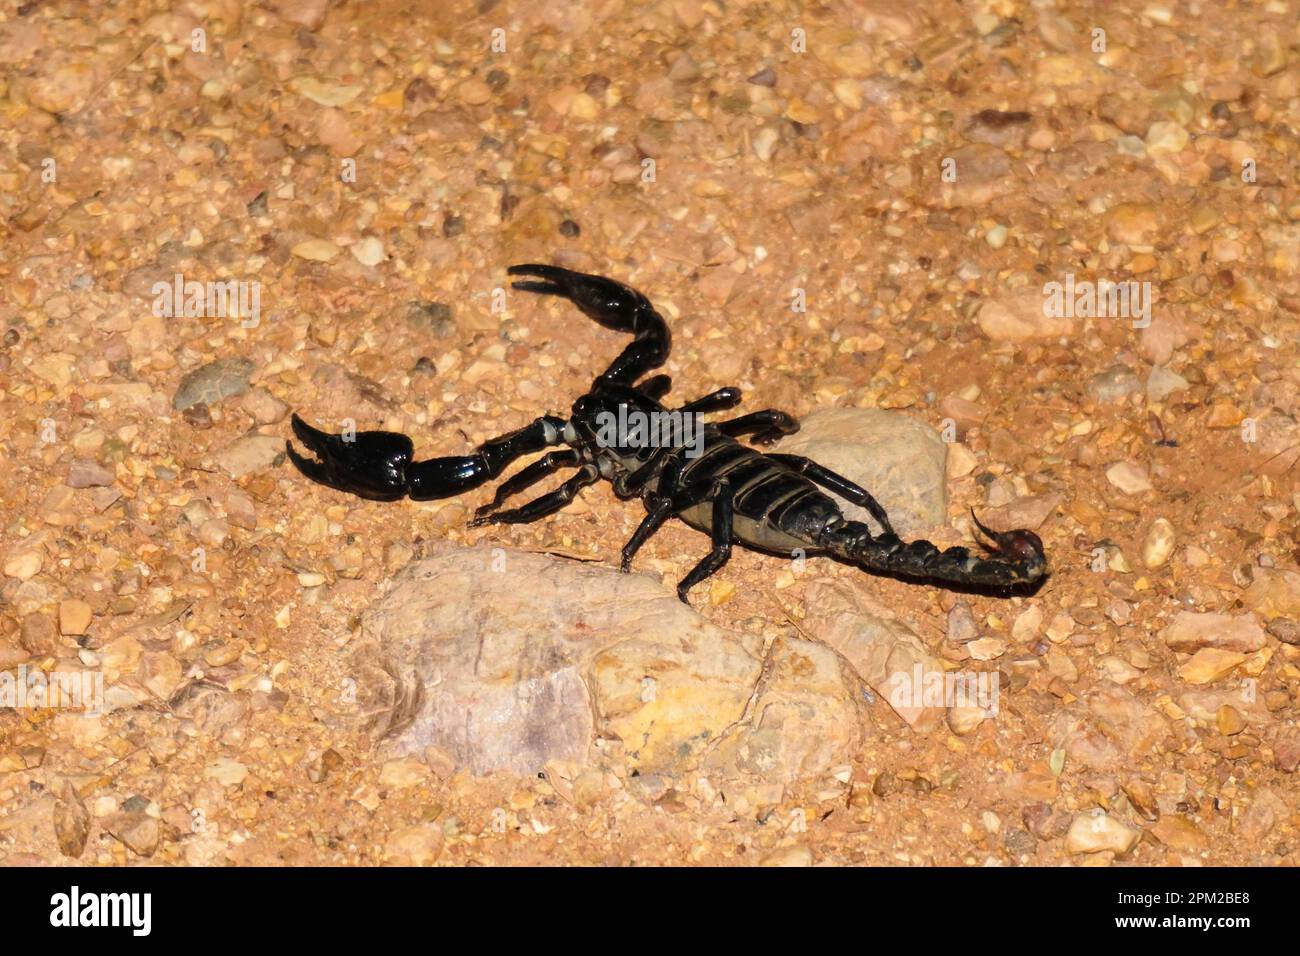 Foresta Nera Scorpione o eterometrus laoticus - una specie aracnide intimidatoria catturata sulla macchina fotografica Foto Stock